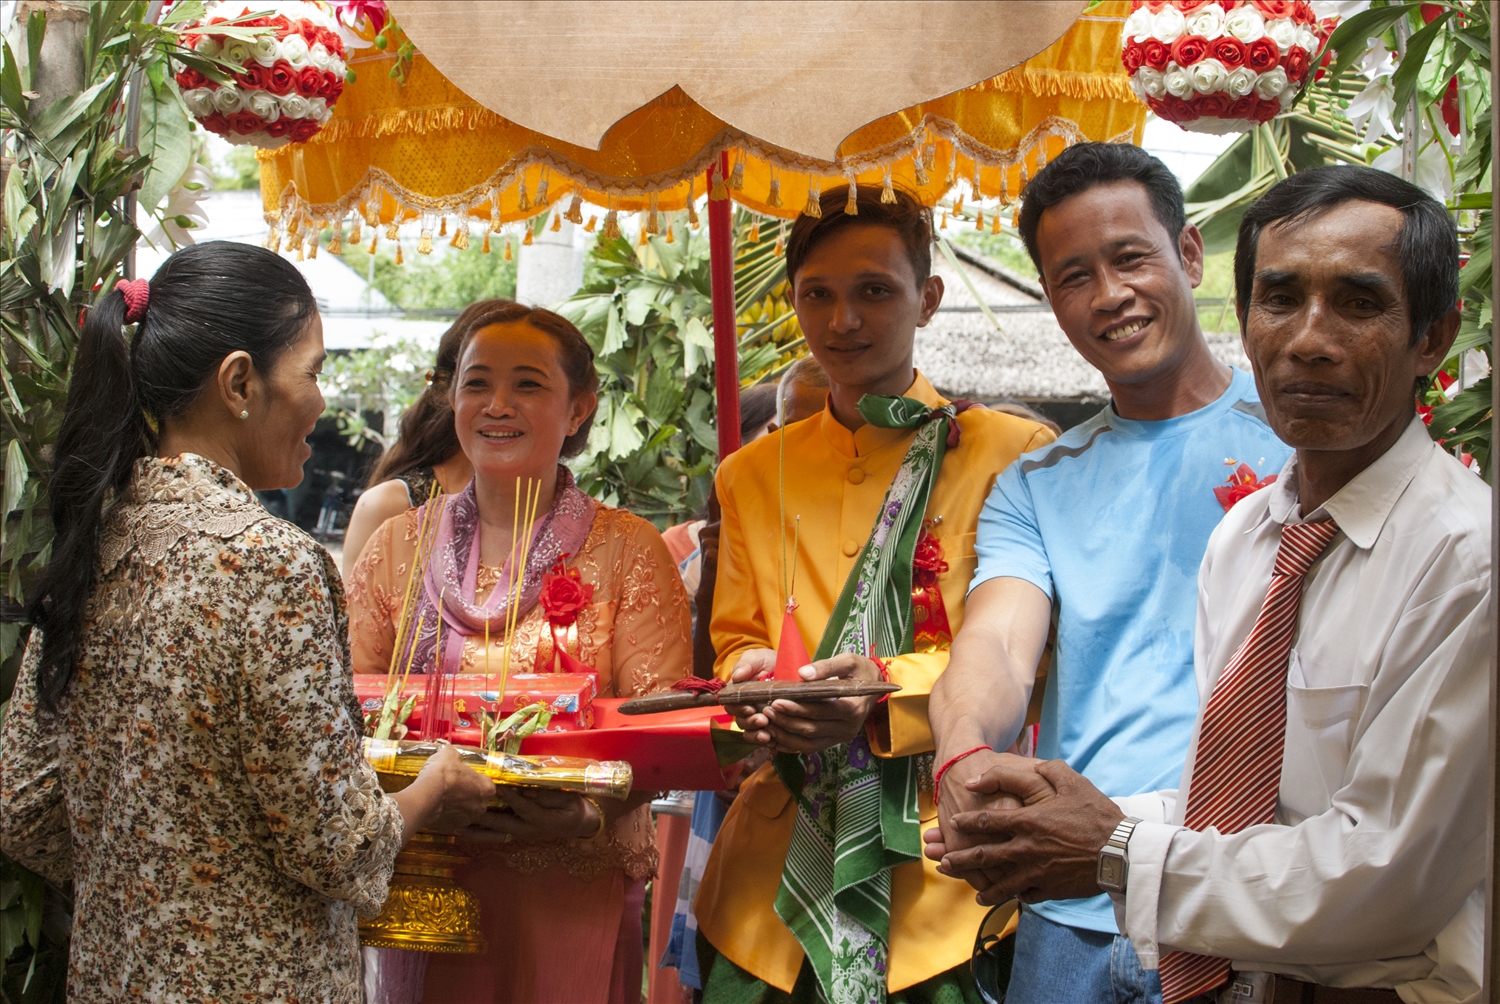 Lễ cưới cổ truyền của người Khmer tạo nên một bản sắc văn hóa riêng 